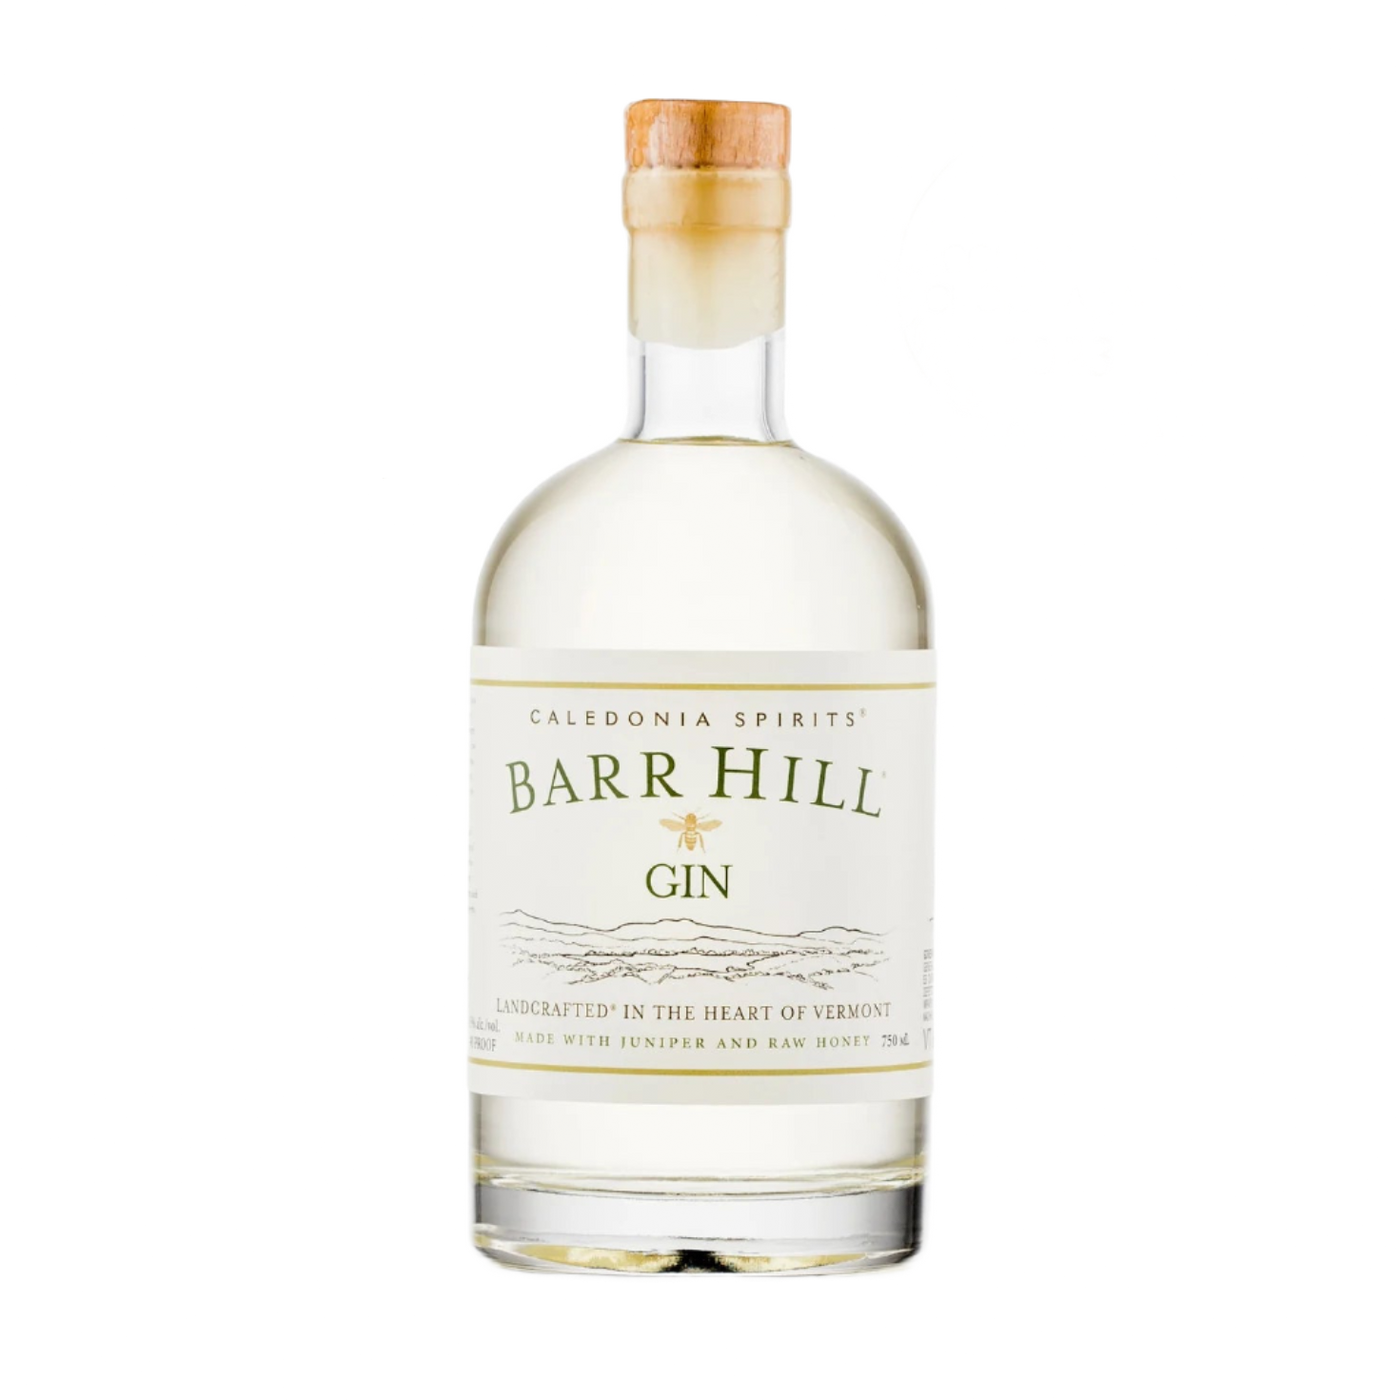 Barr Hill gin